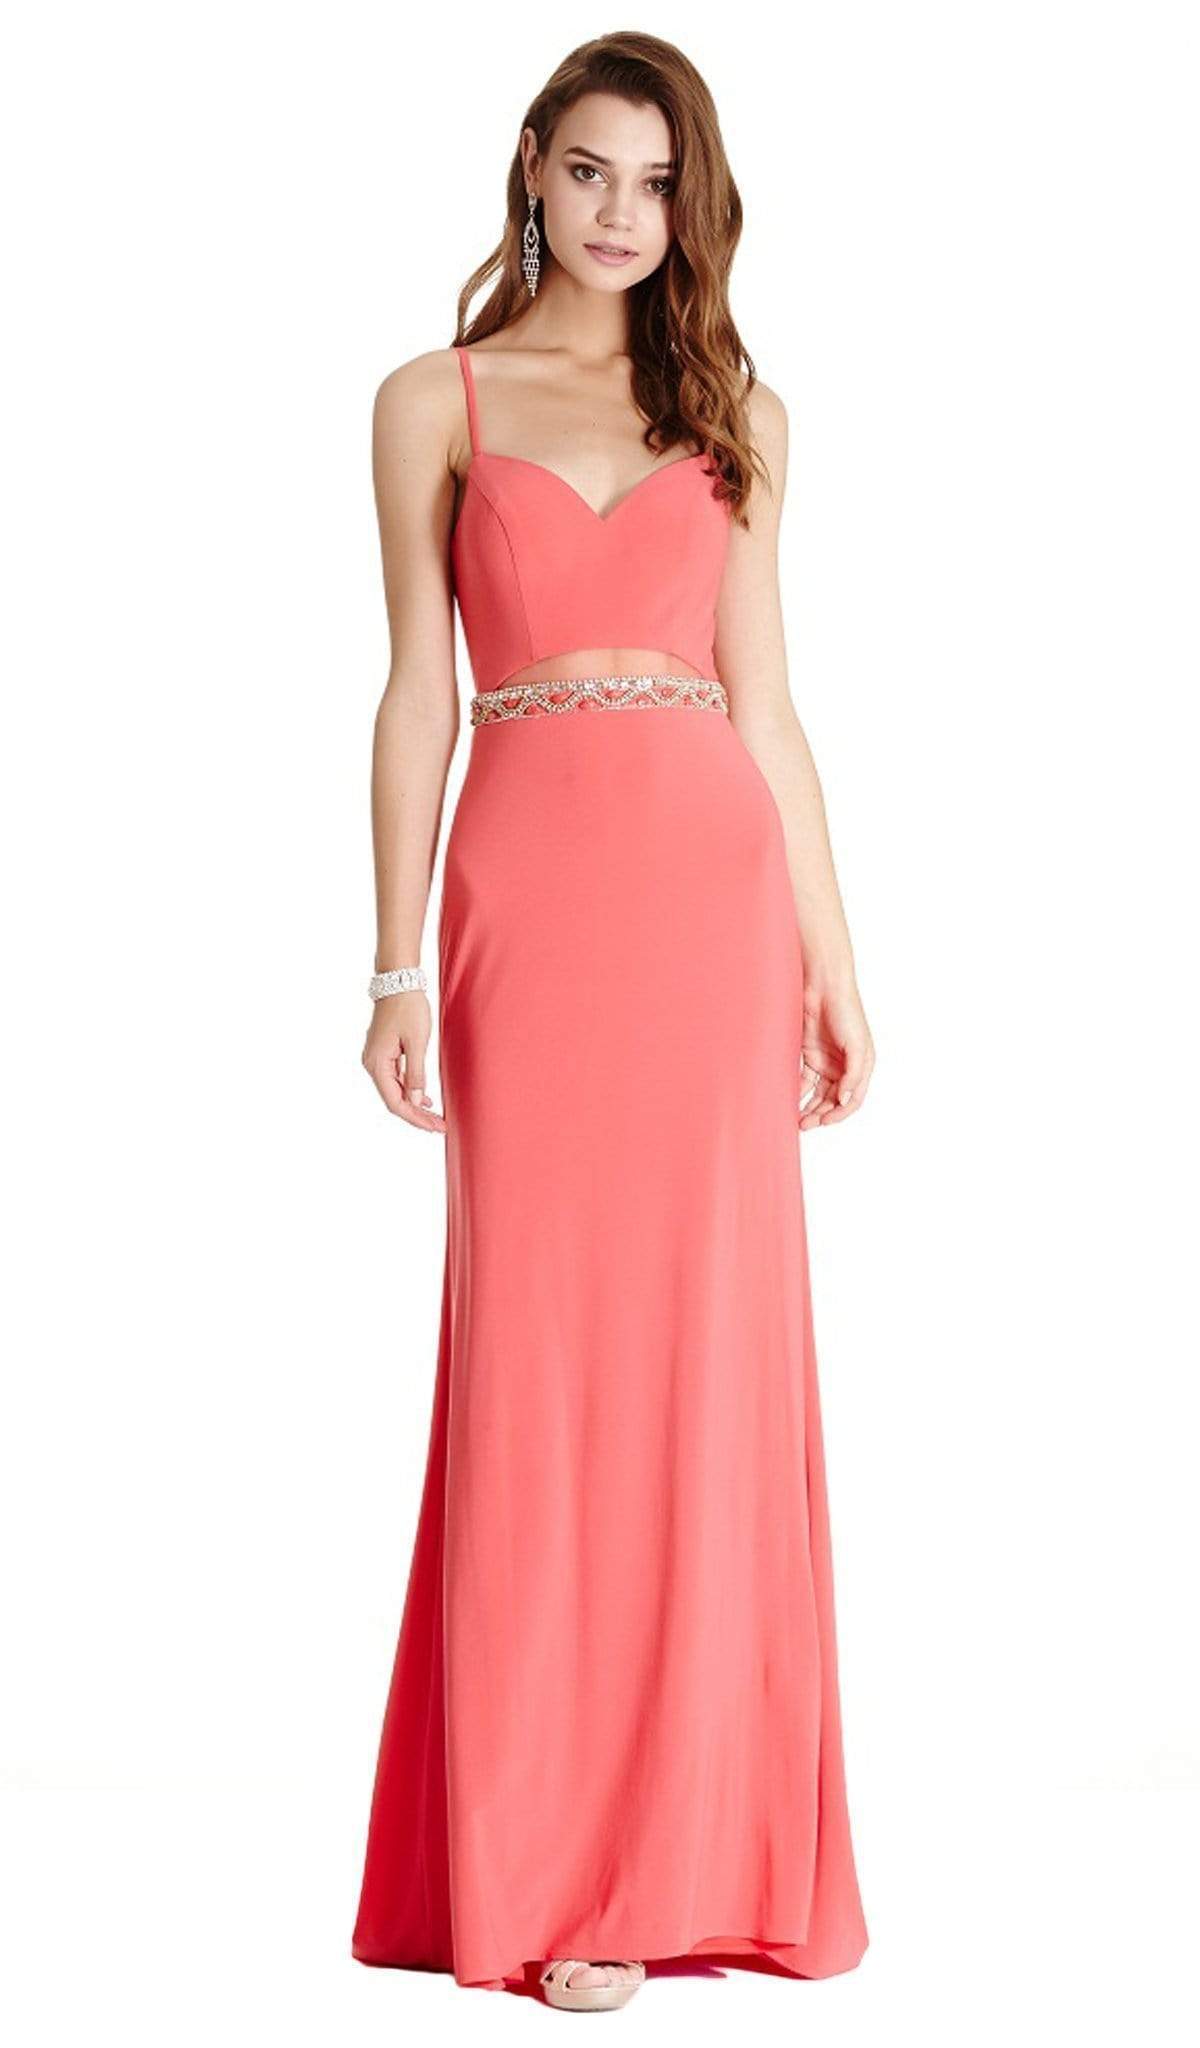 Image of Aspeed Design - Embellished Sweetheart Sheath Prom Dress